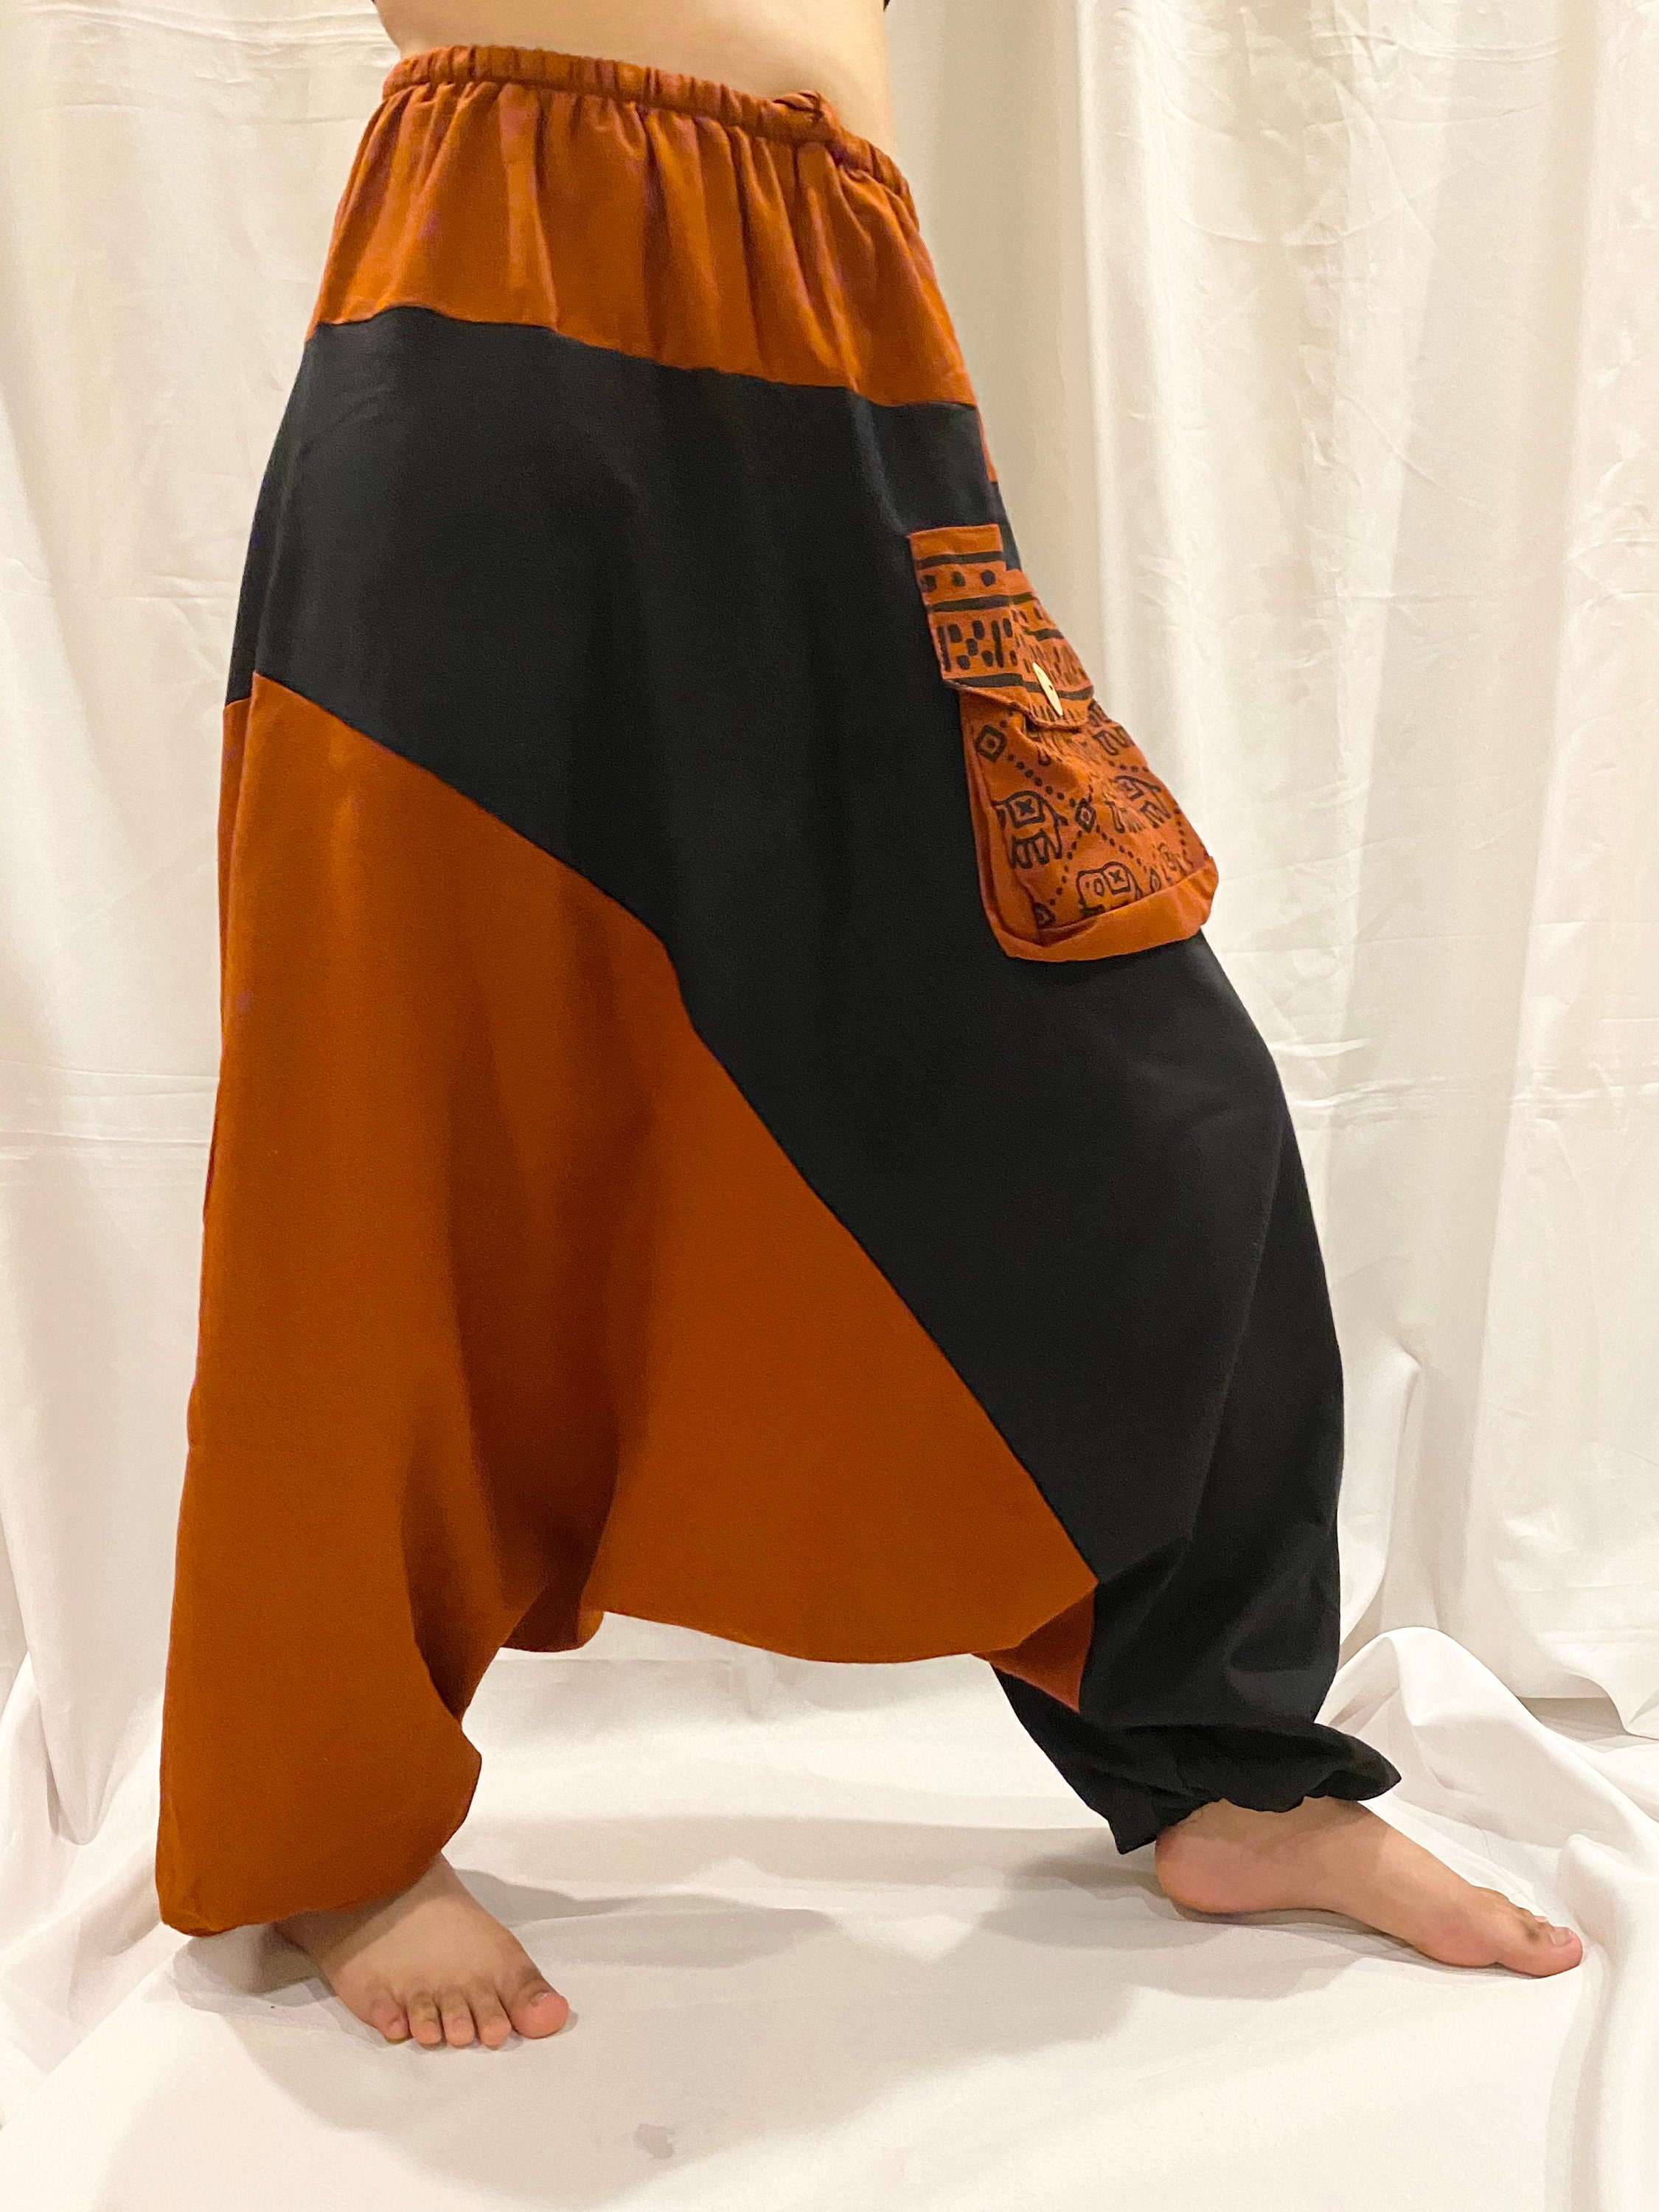 Aladdin Harem PantsElephant Print Yoga PantsDrop Crotch | Etsy